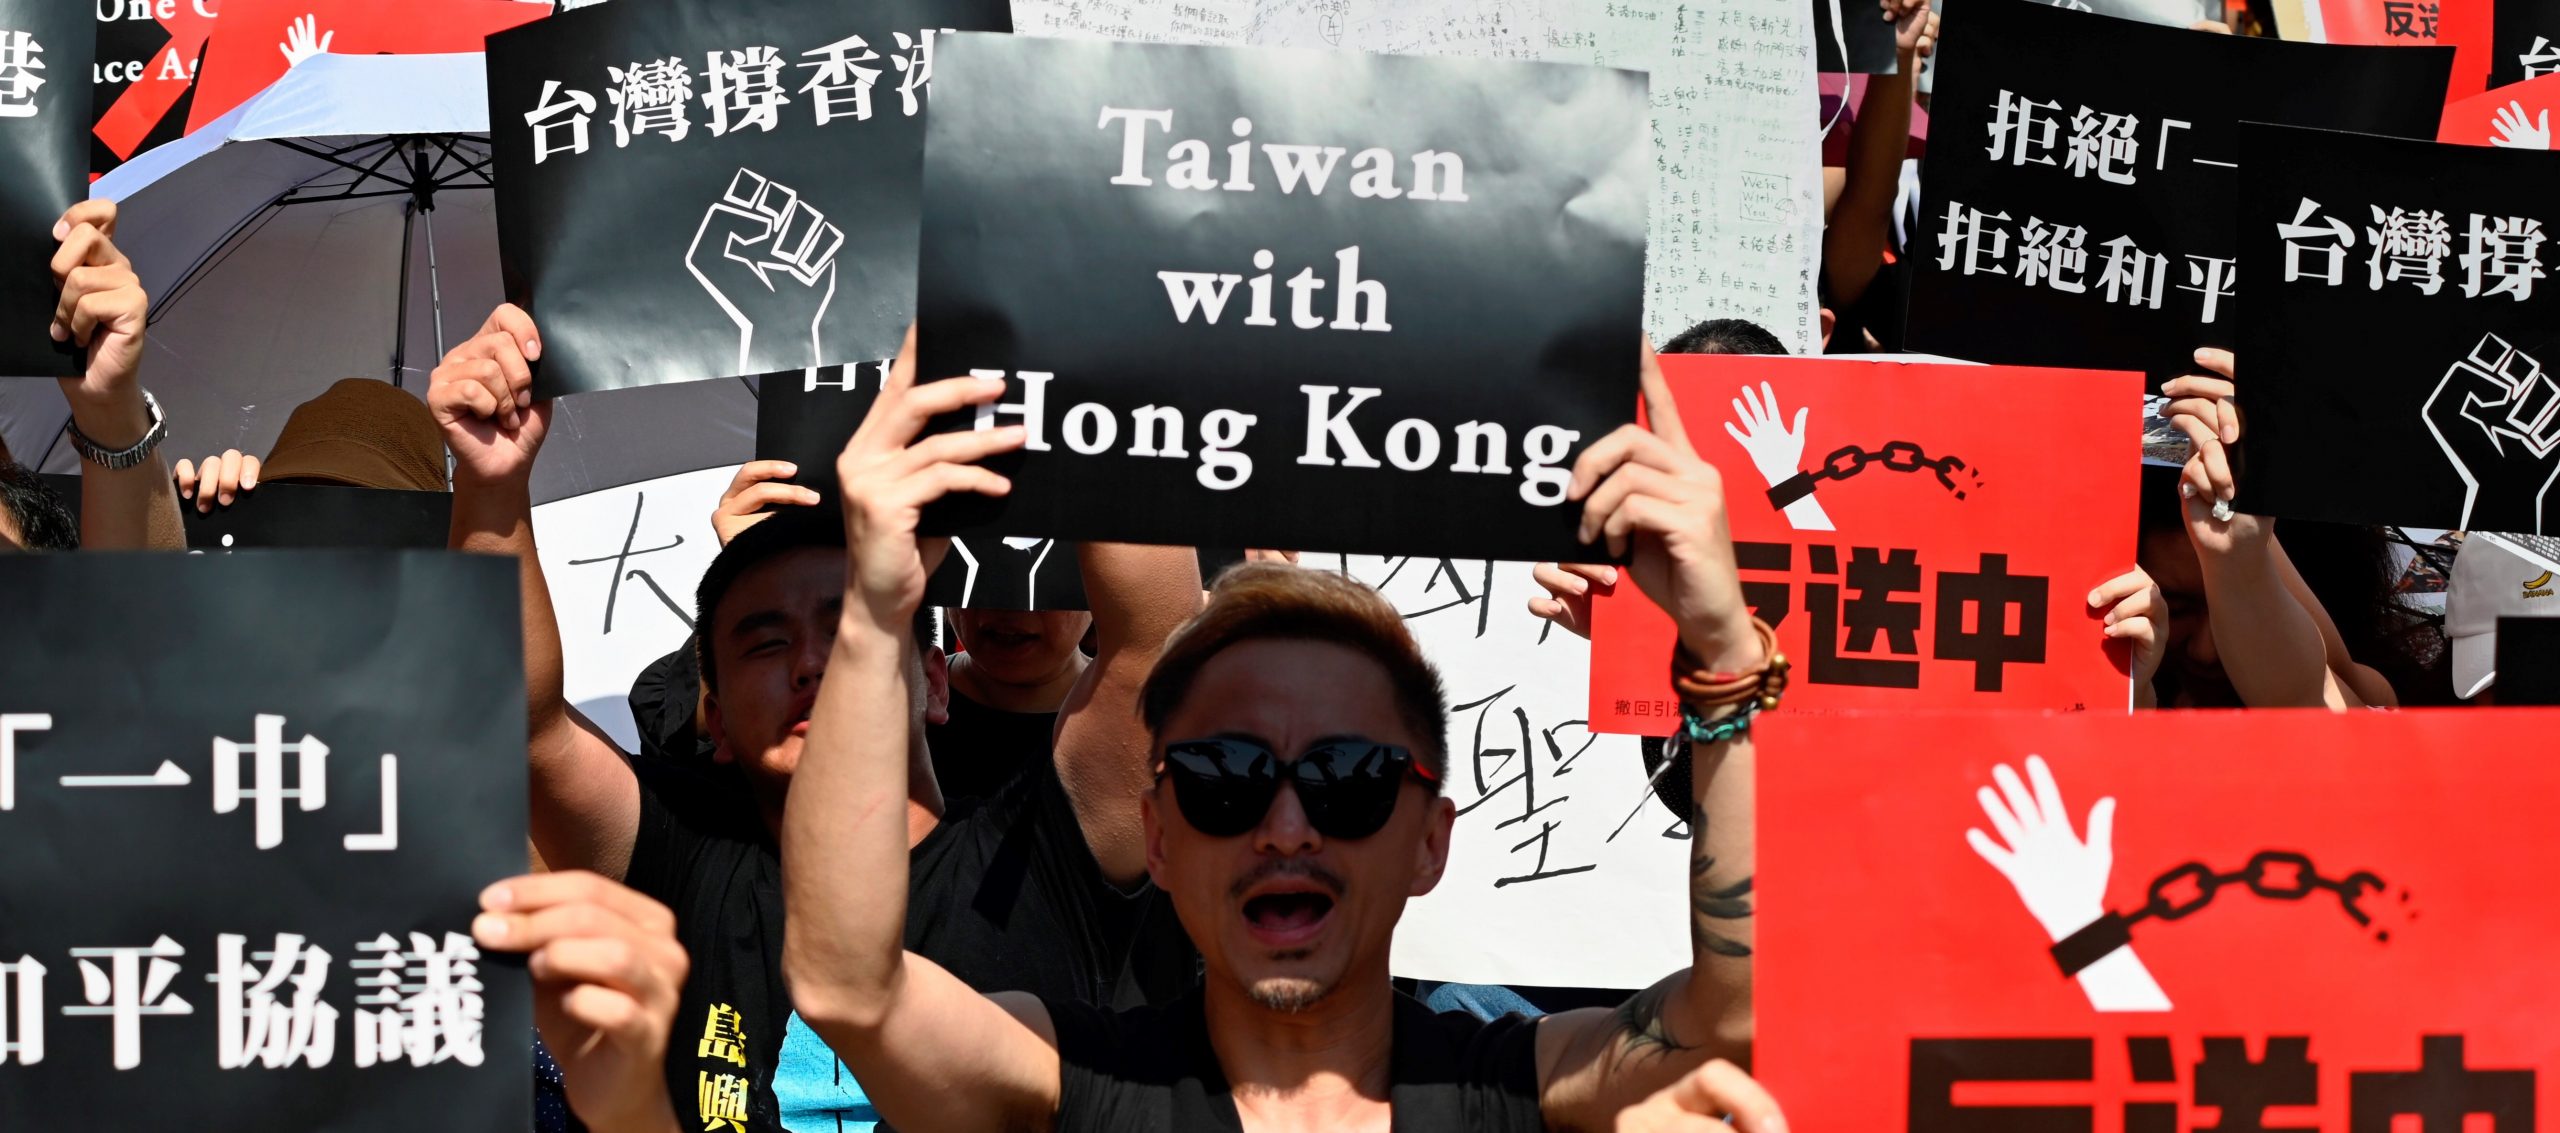 En juin 2019, des Taïwanais manifestent leur soutien au mouvement pro-démocratie contre la loi d'extradition à Hong Hong. (Source : New Statesman)